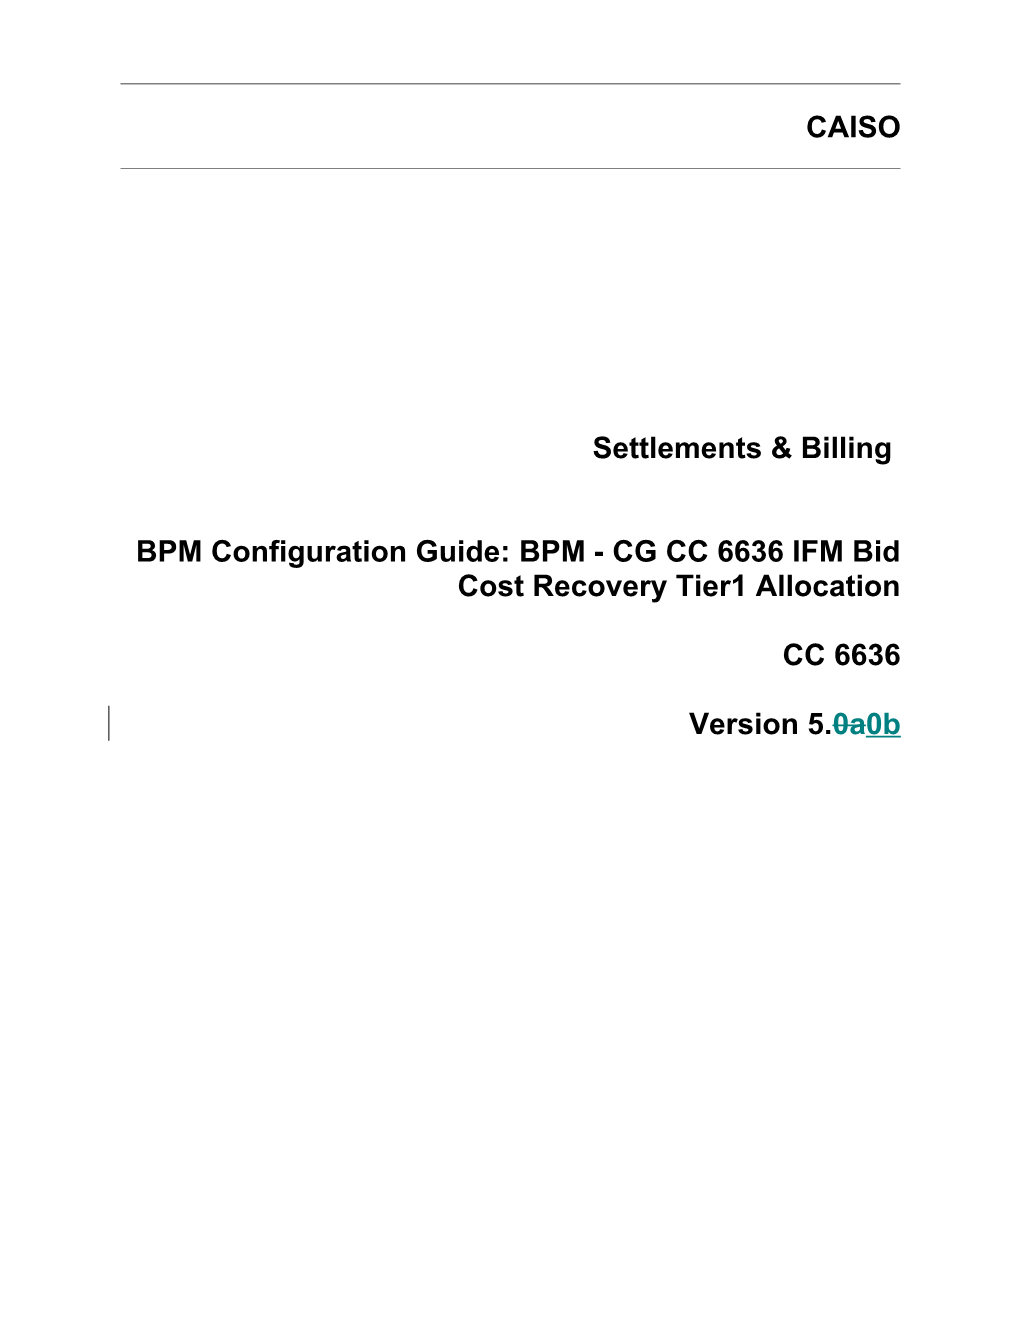 BPM - CG CC 6636 IFM Bid Cost Recovery Tier1 Allocation